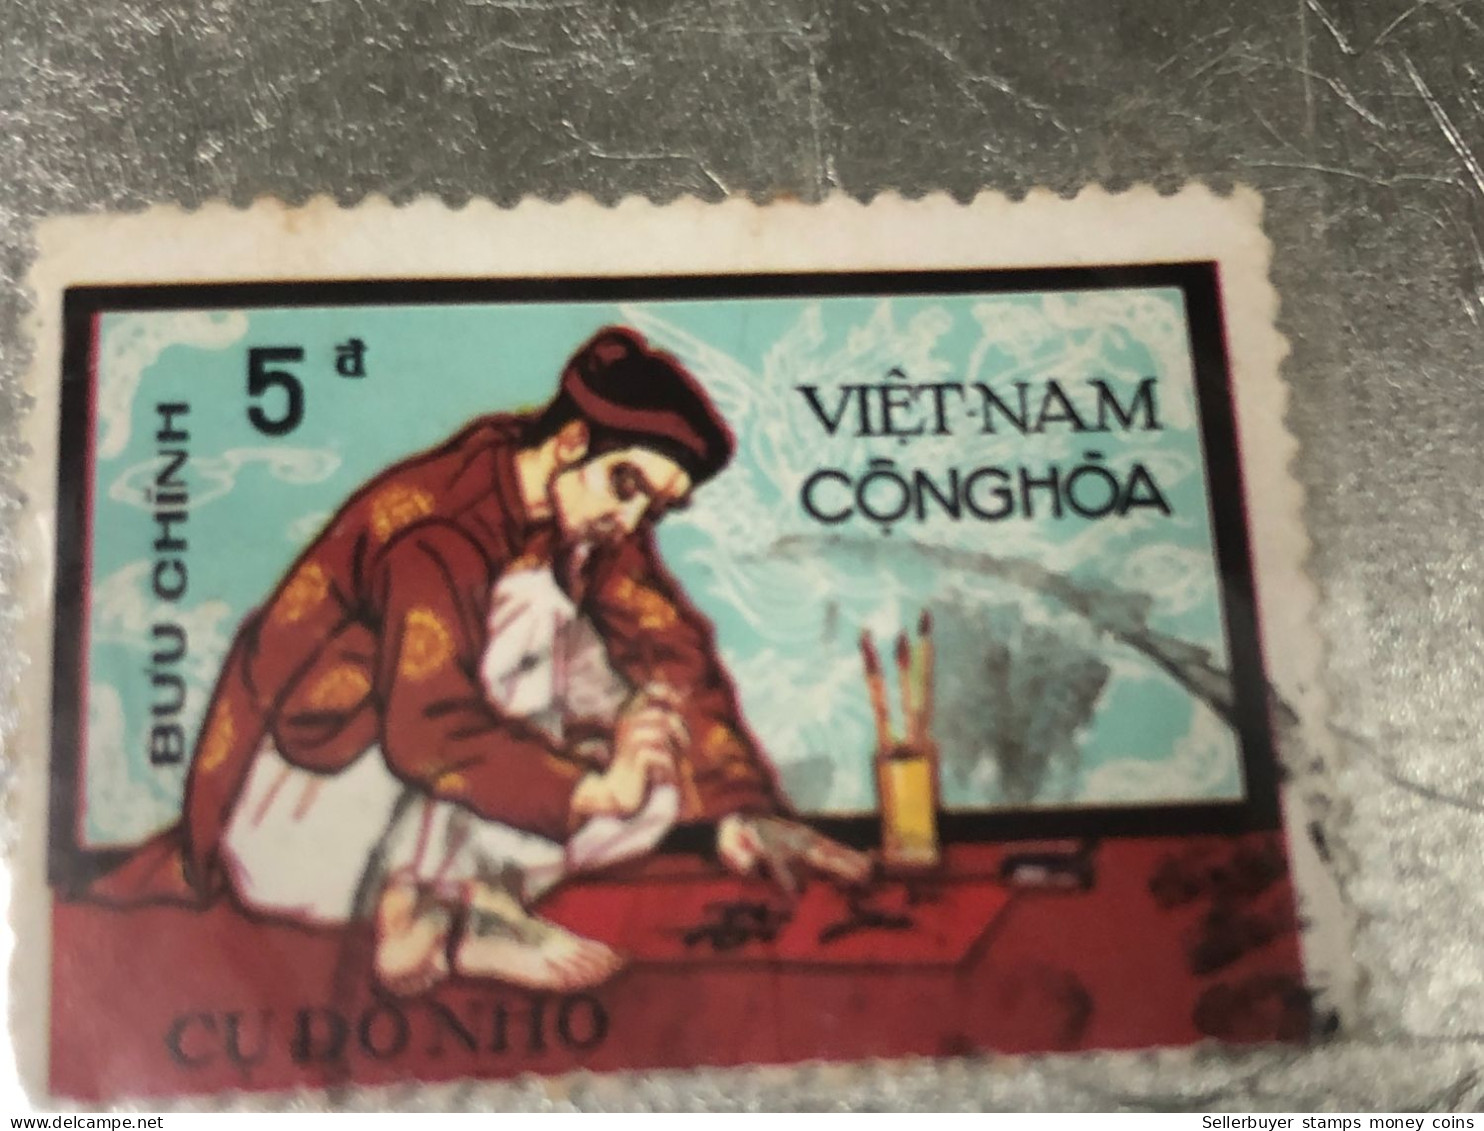 SOUTH VIETNAM Stamps(1972-CU DO NHO-5d00) PRINT ERROR(ASKEW )1 STAMPS-vyre Rare - Viêt-Nam